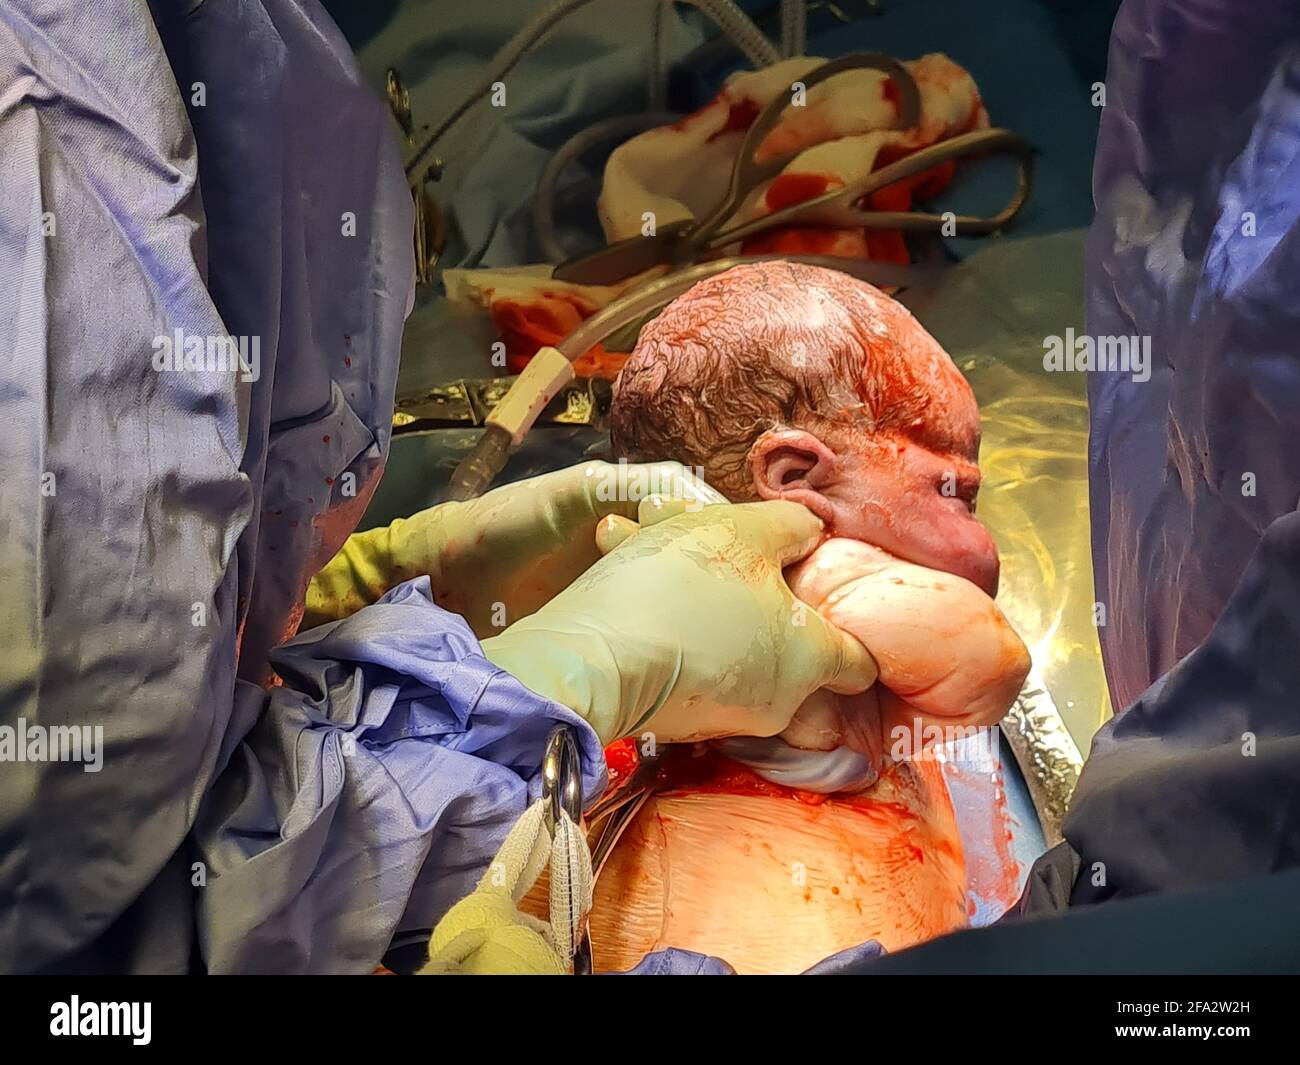 AUCKLAND, NUOVA ZELANDA - Apr 13, 2021: Ostetrico tira il bambino di termine neonato dalla ferita cesarean. Le mani dei chirurghi sono alle spalle del bambino che tira verso l'alto Foto Stock